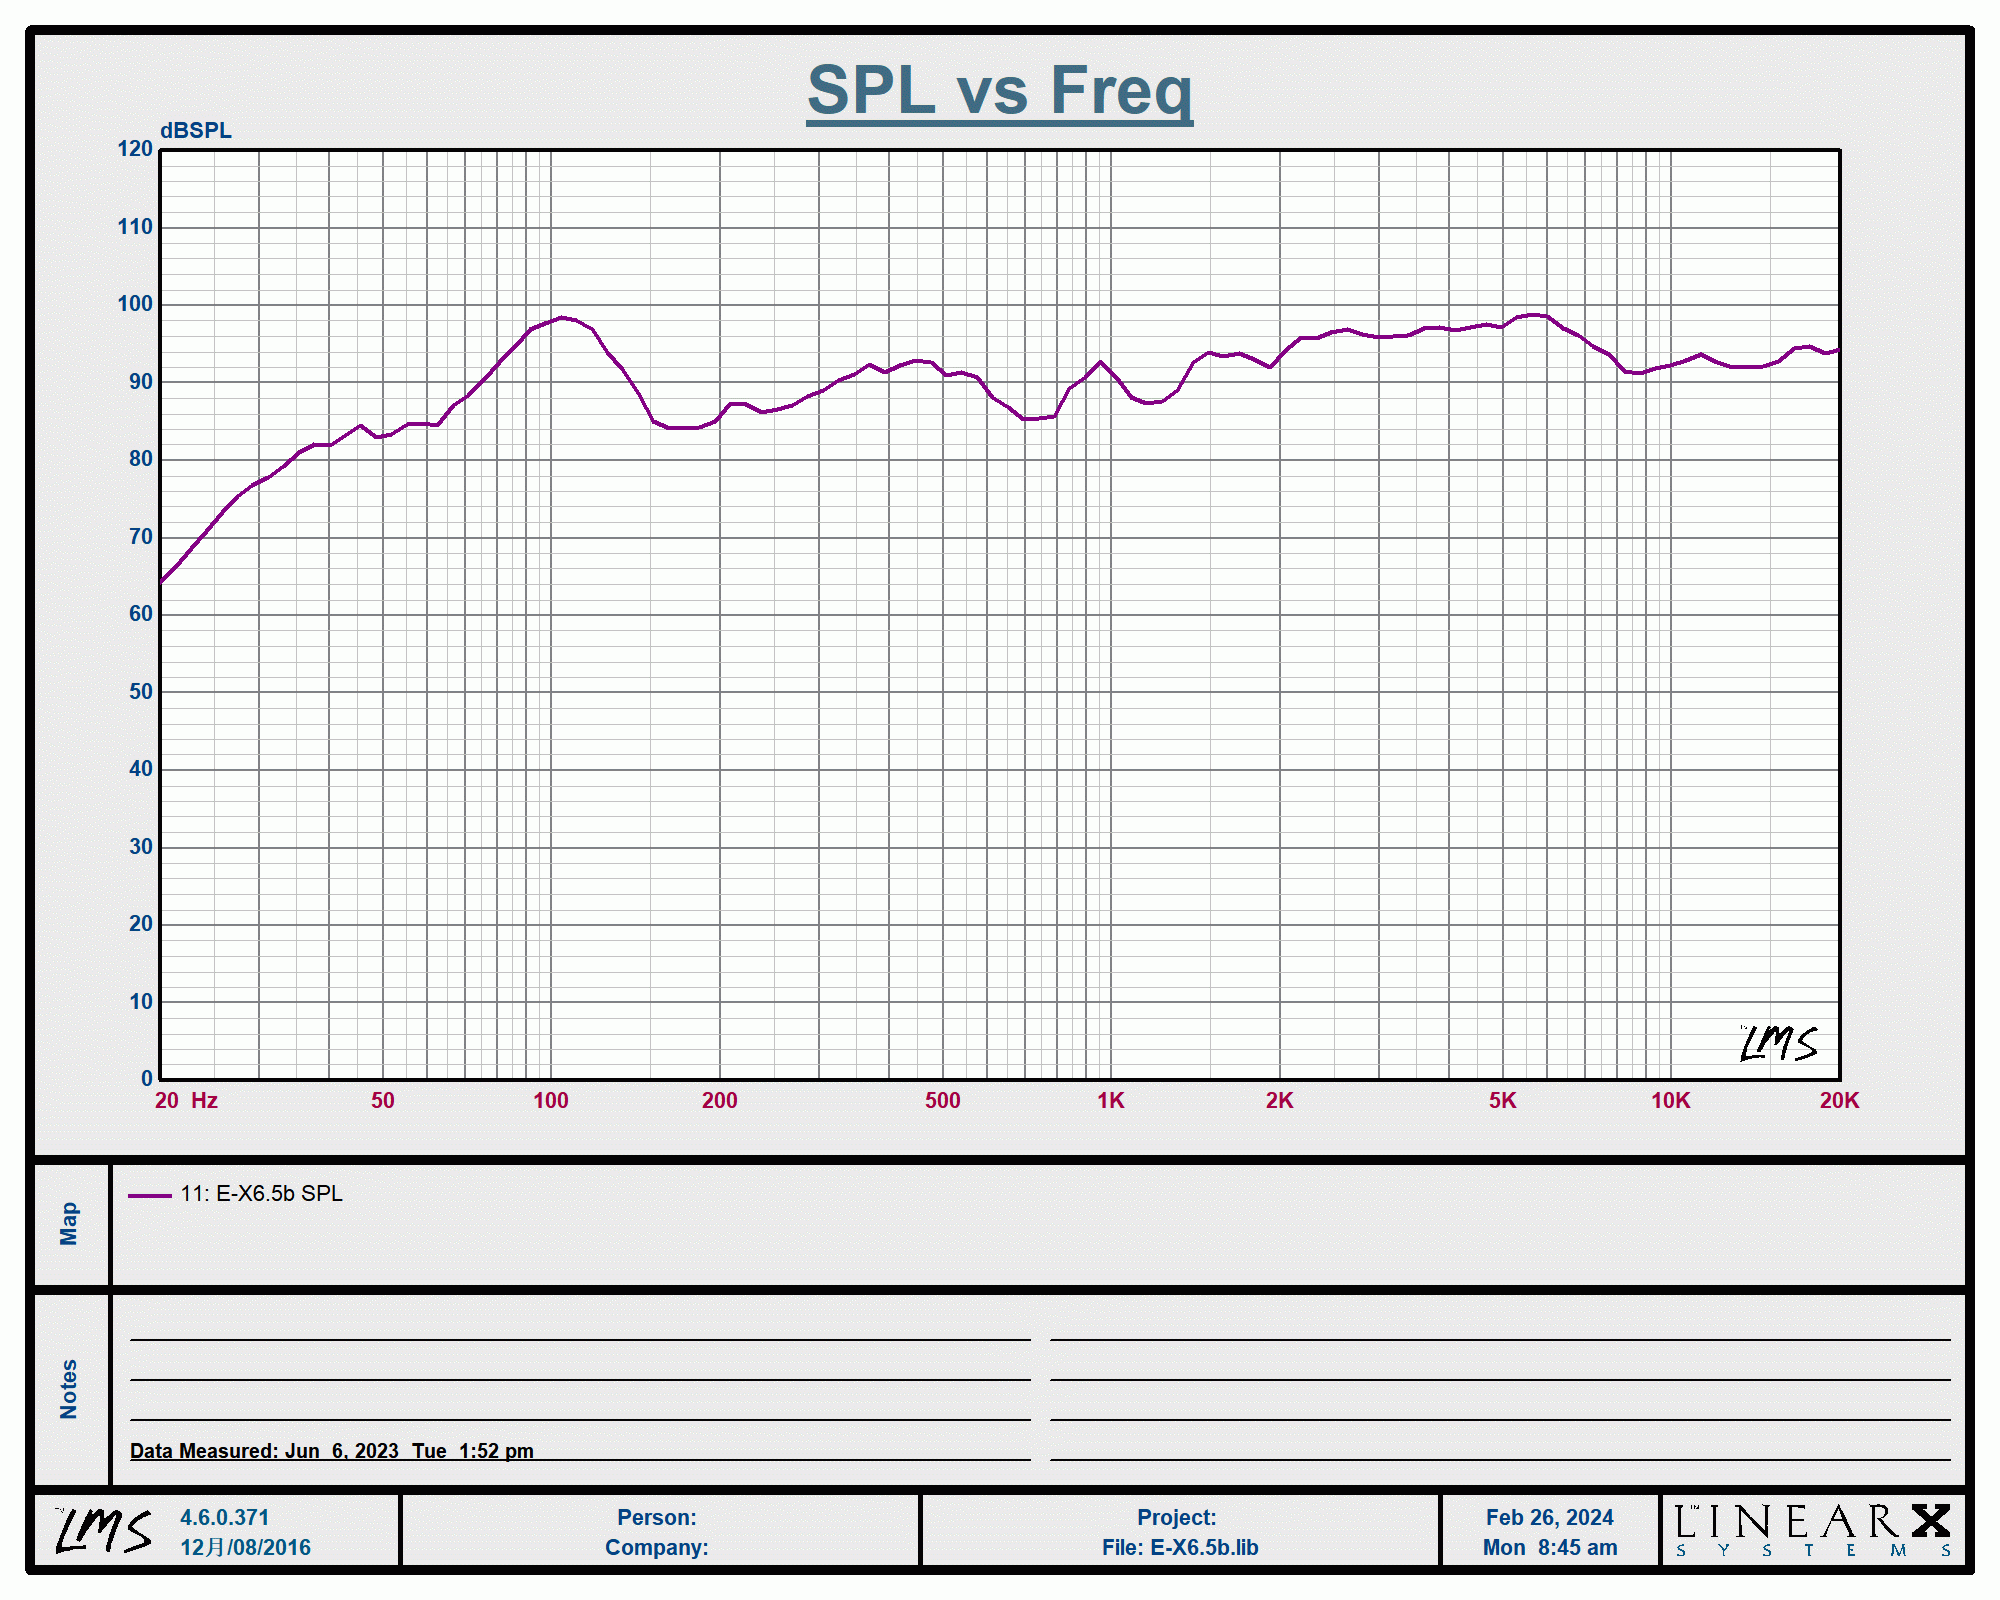 A graph showing the e-x6.5 spl vs freq.